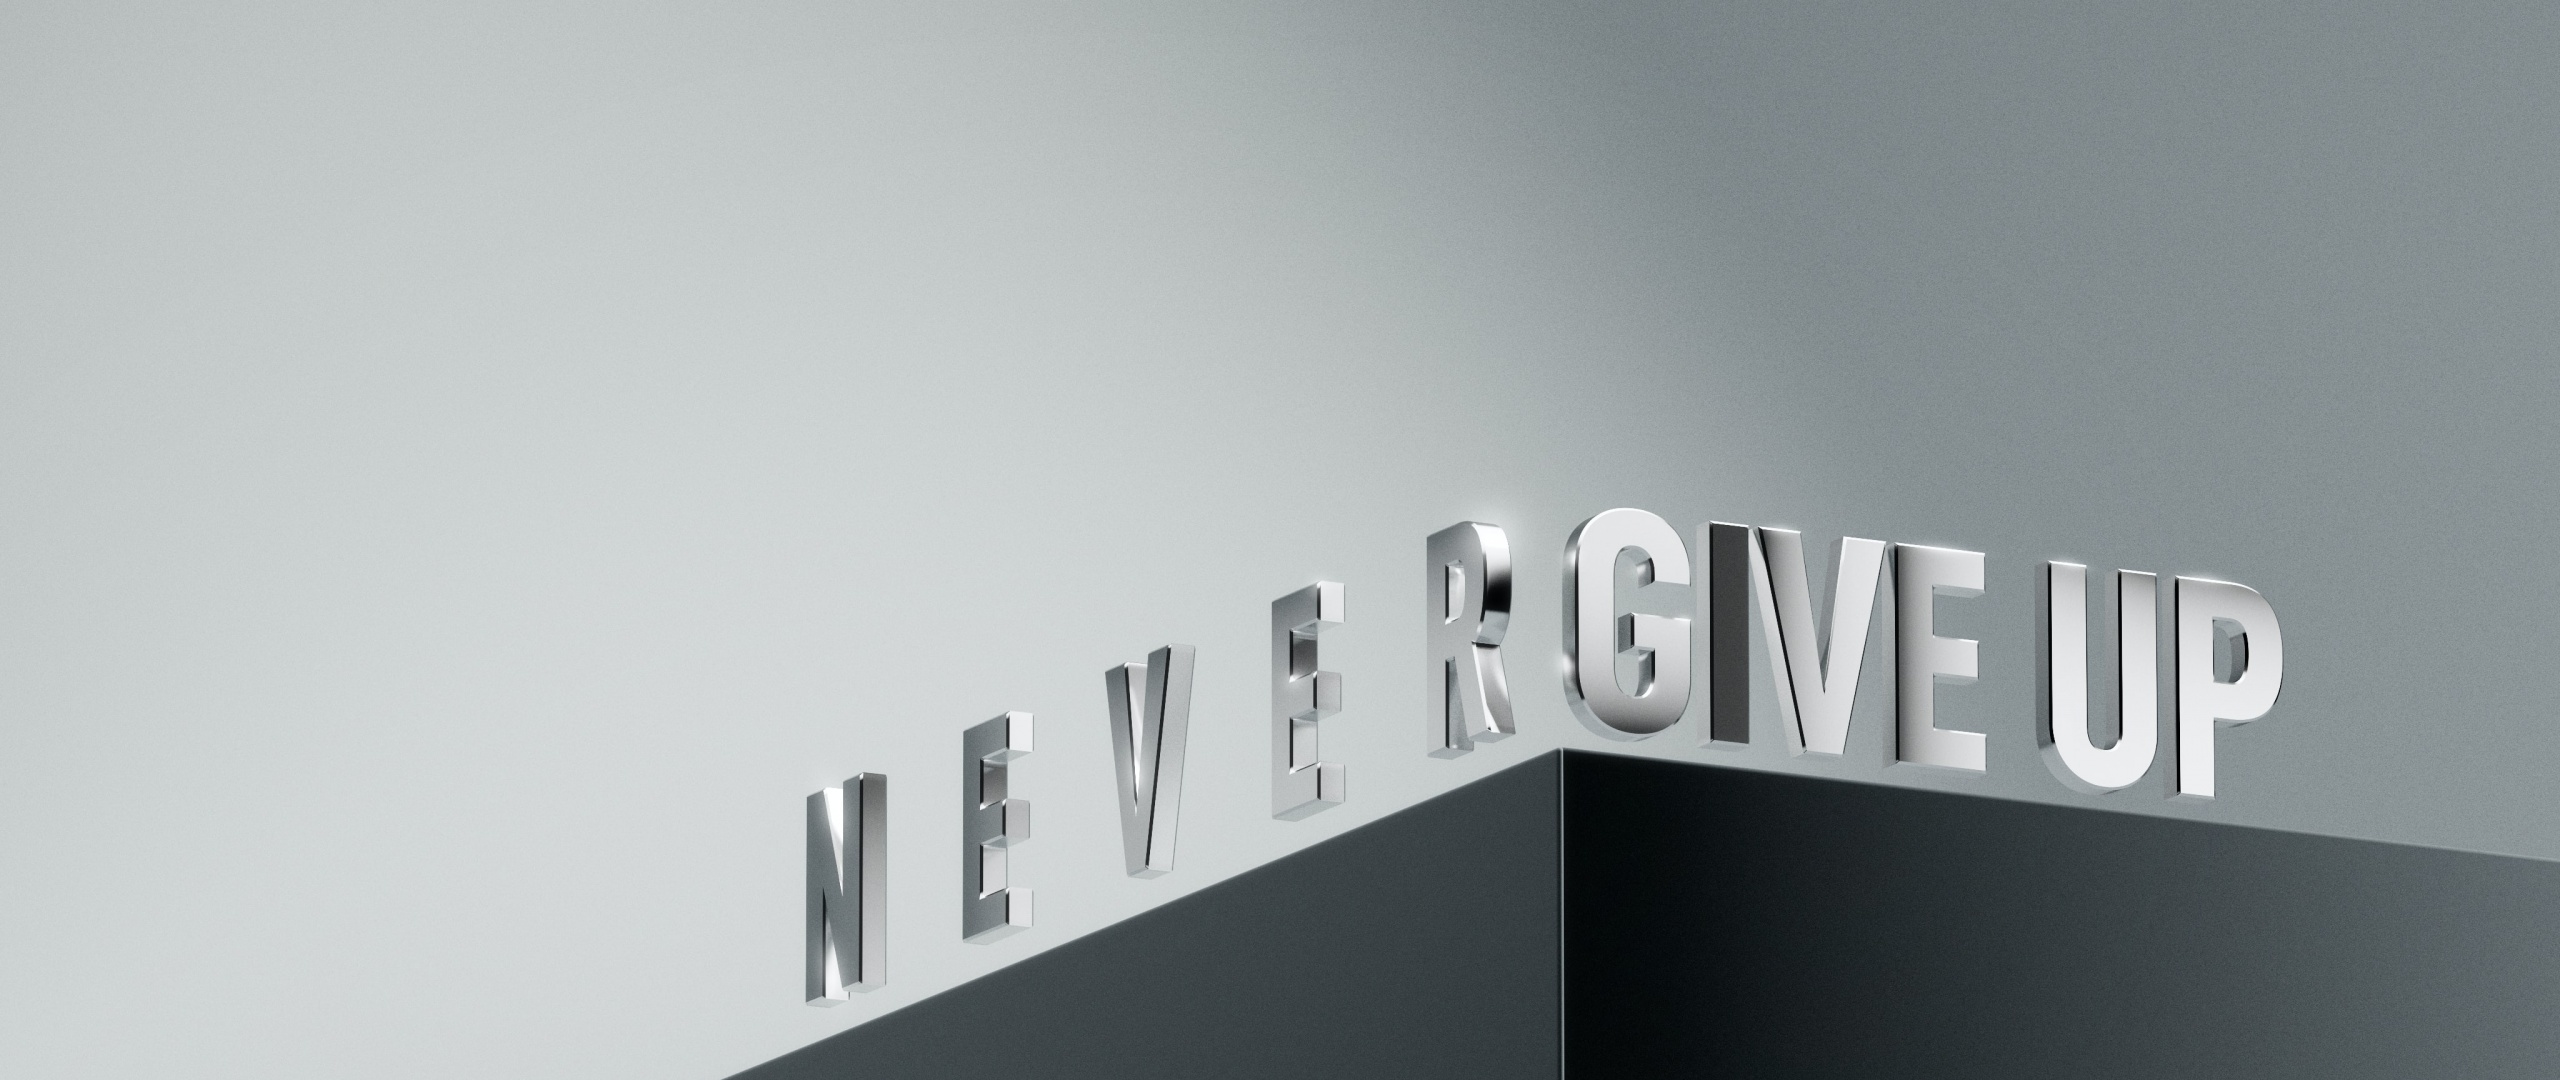 Never Give Up Wallpaper 4K Motivational 3D letters Render 6785